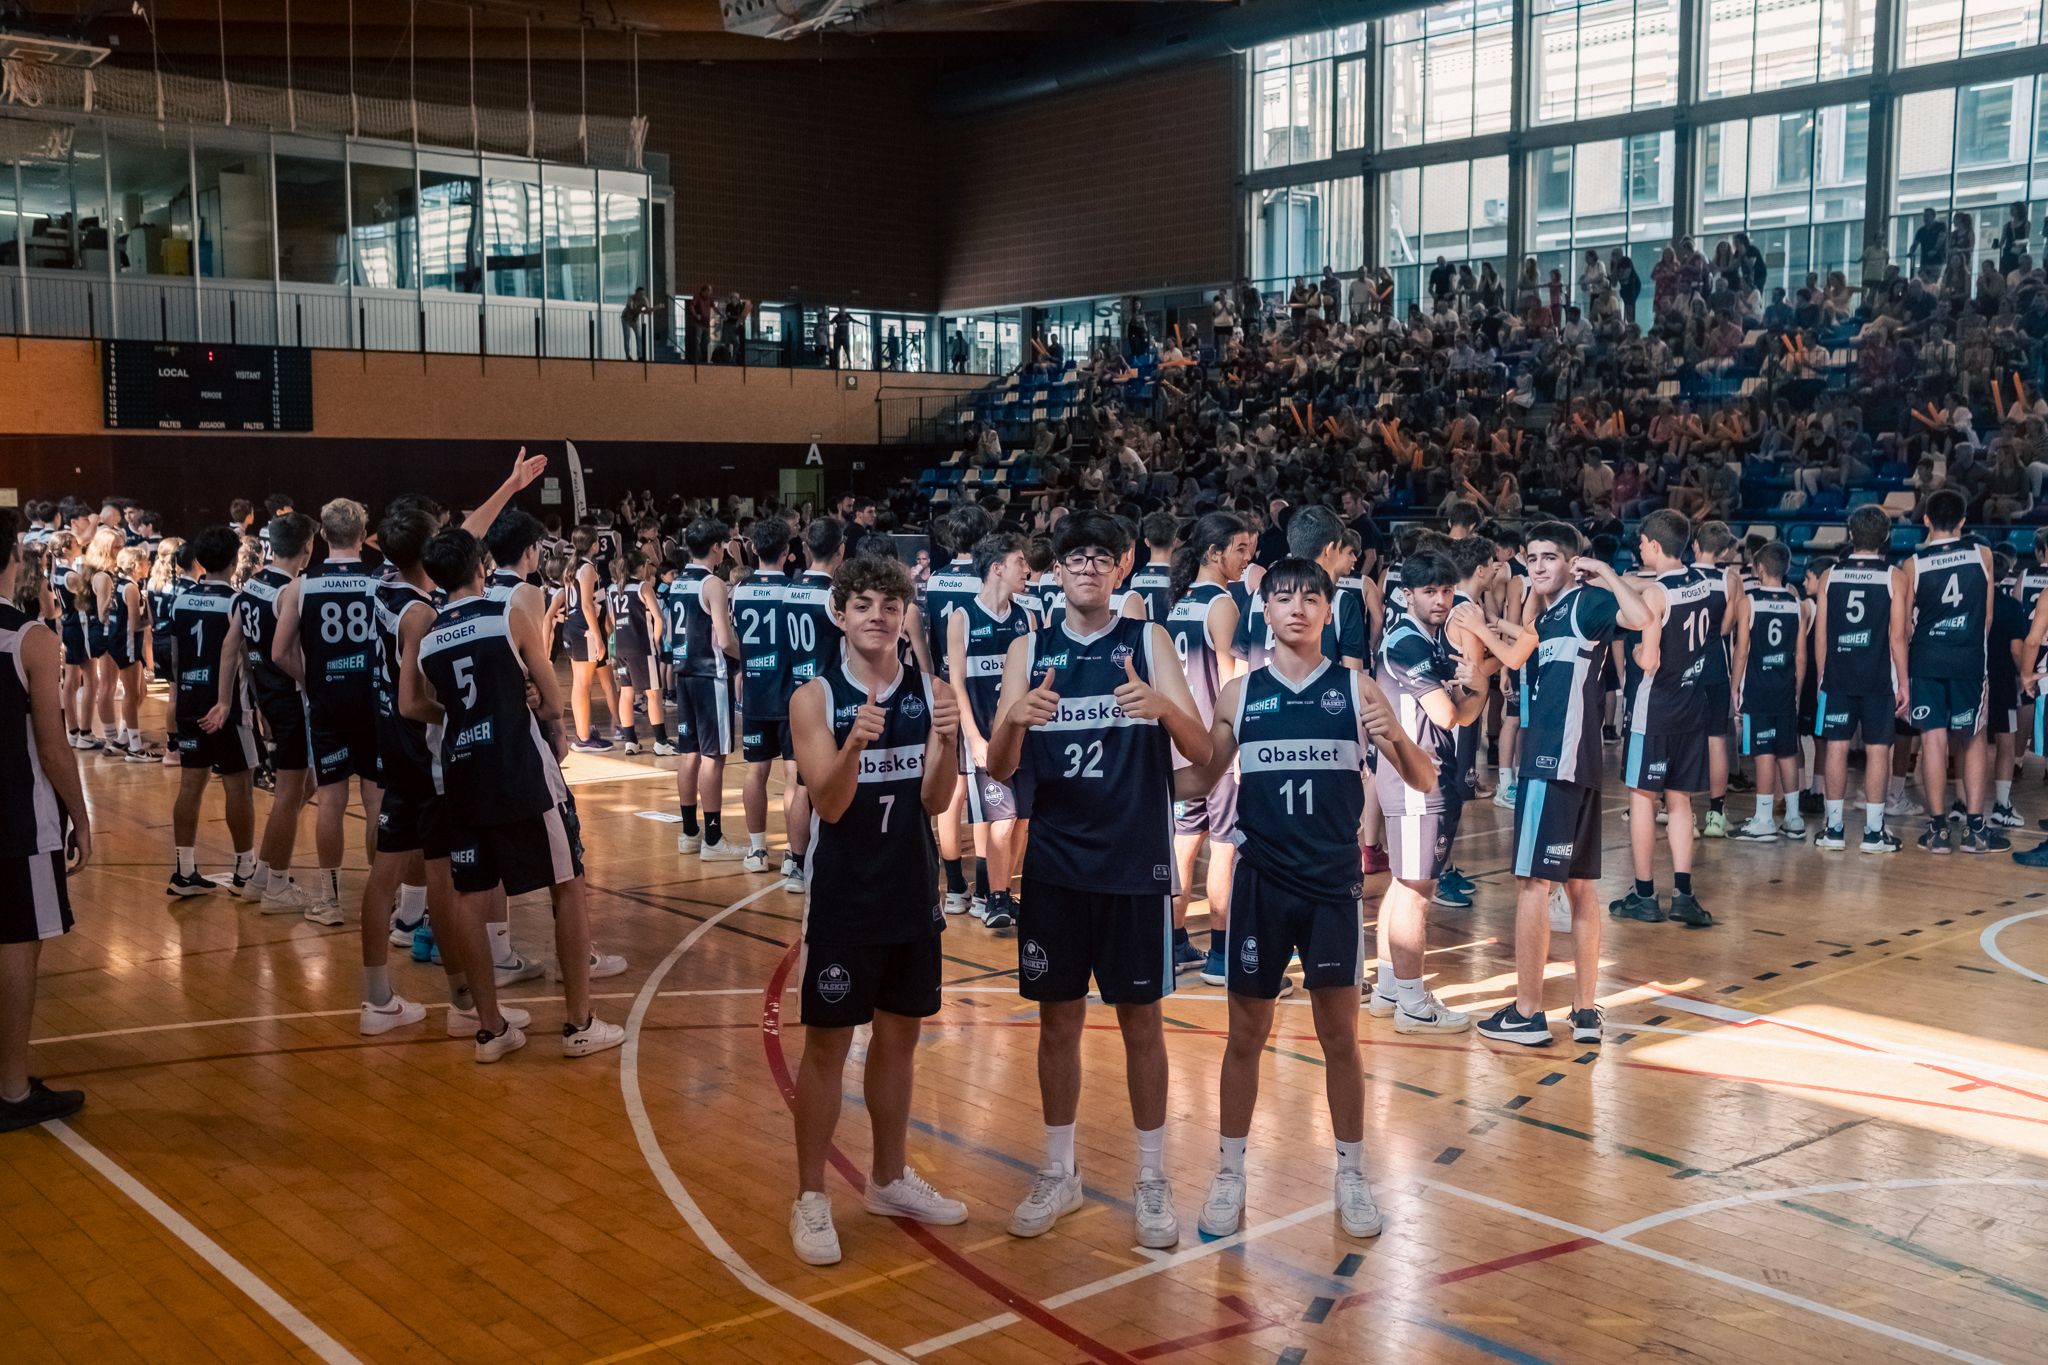 Presentació dels equips de Qbasket Sant Cugat. FOTO: Ale Gómez